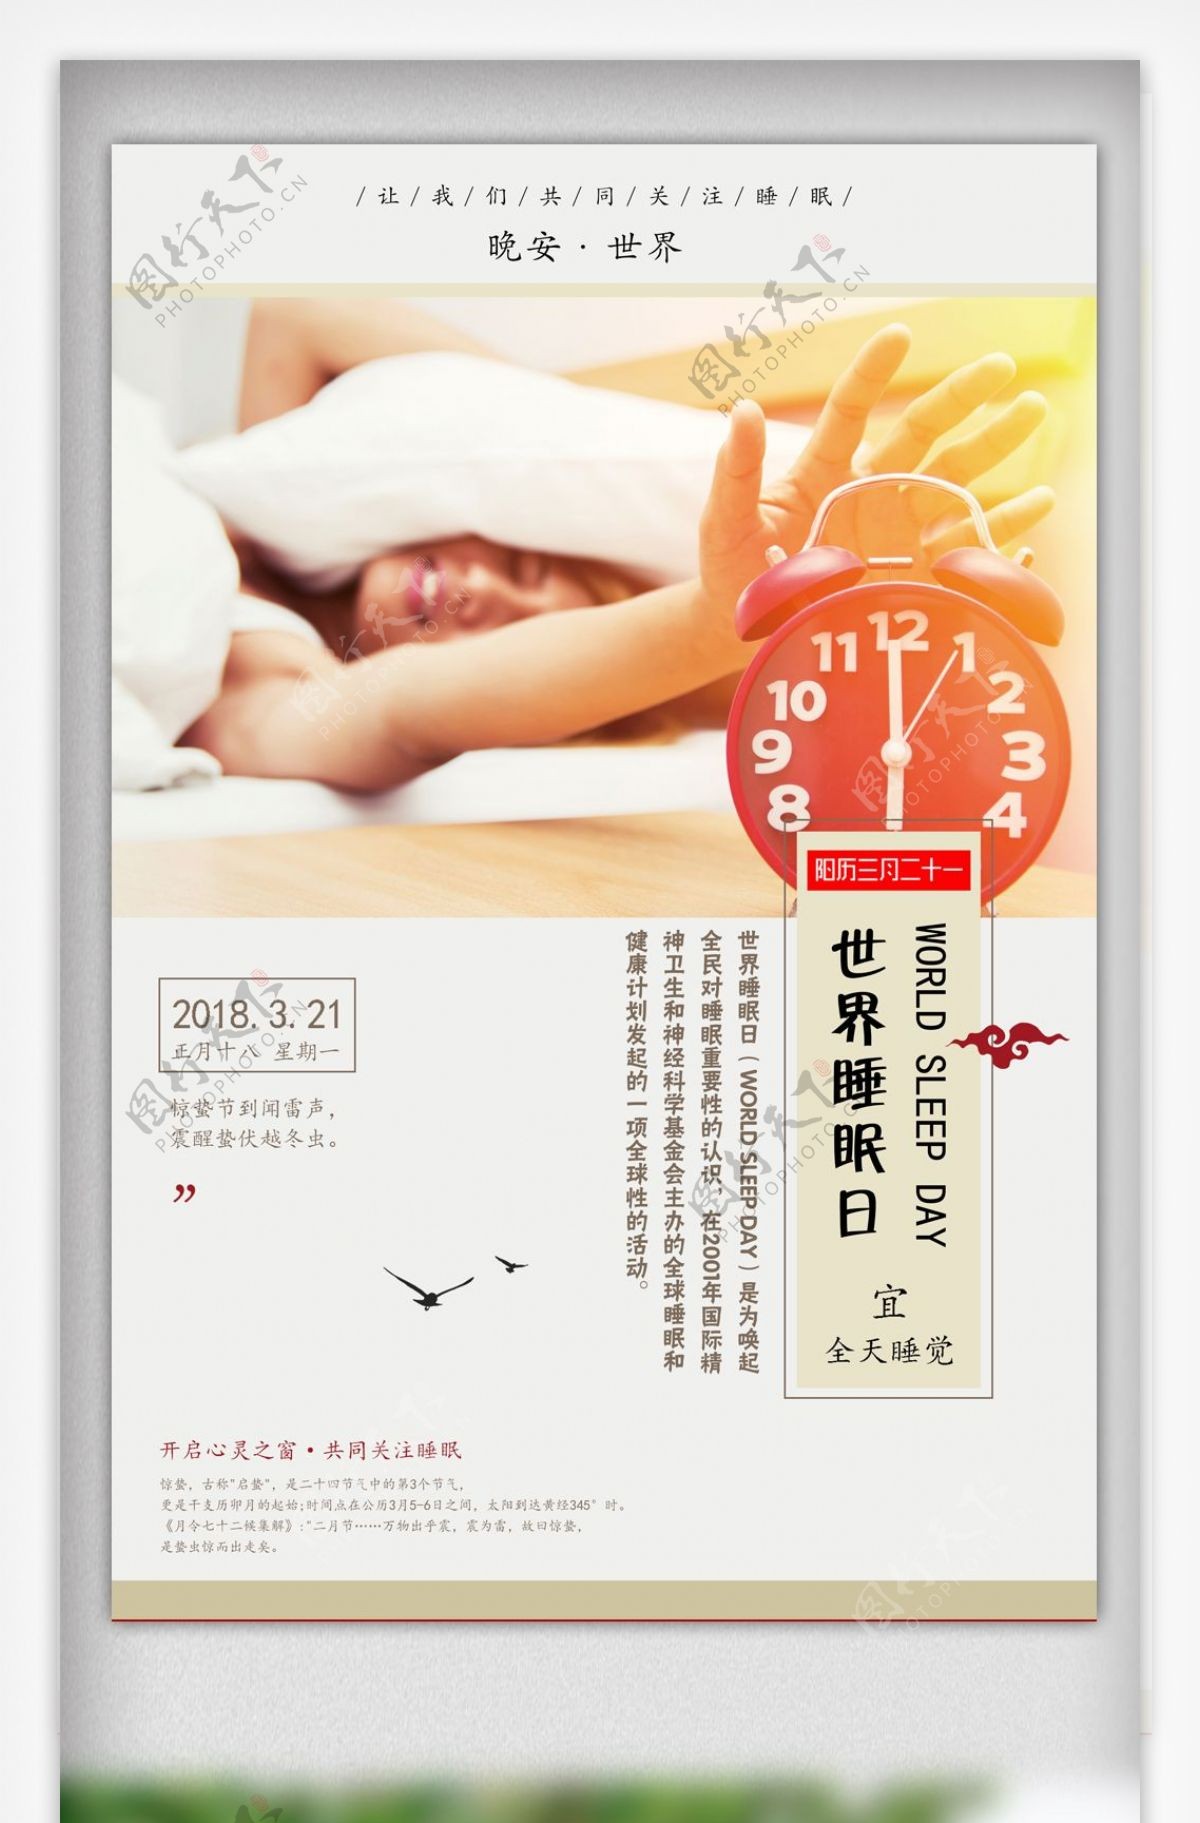 世界睡眠日健康睡眠宣传海报